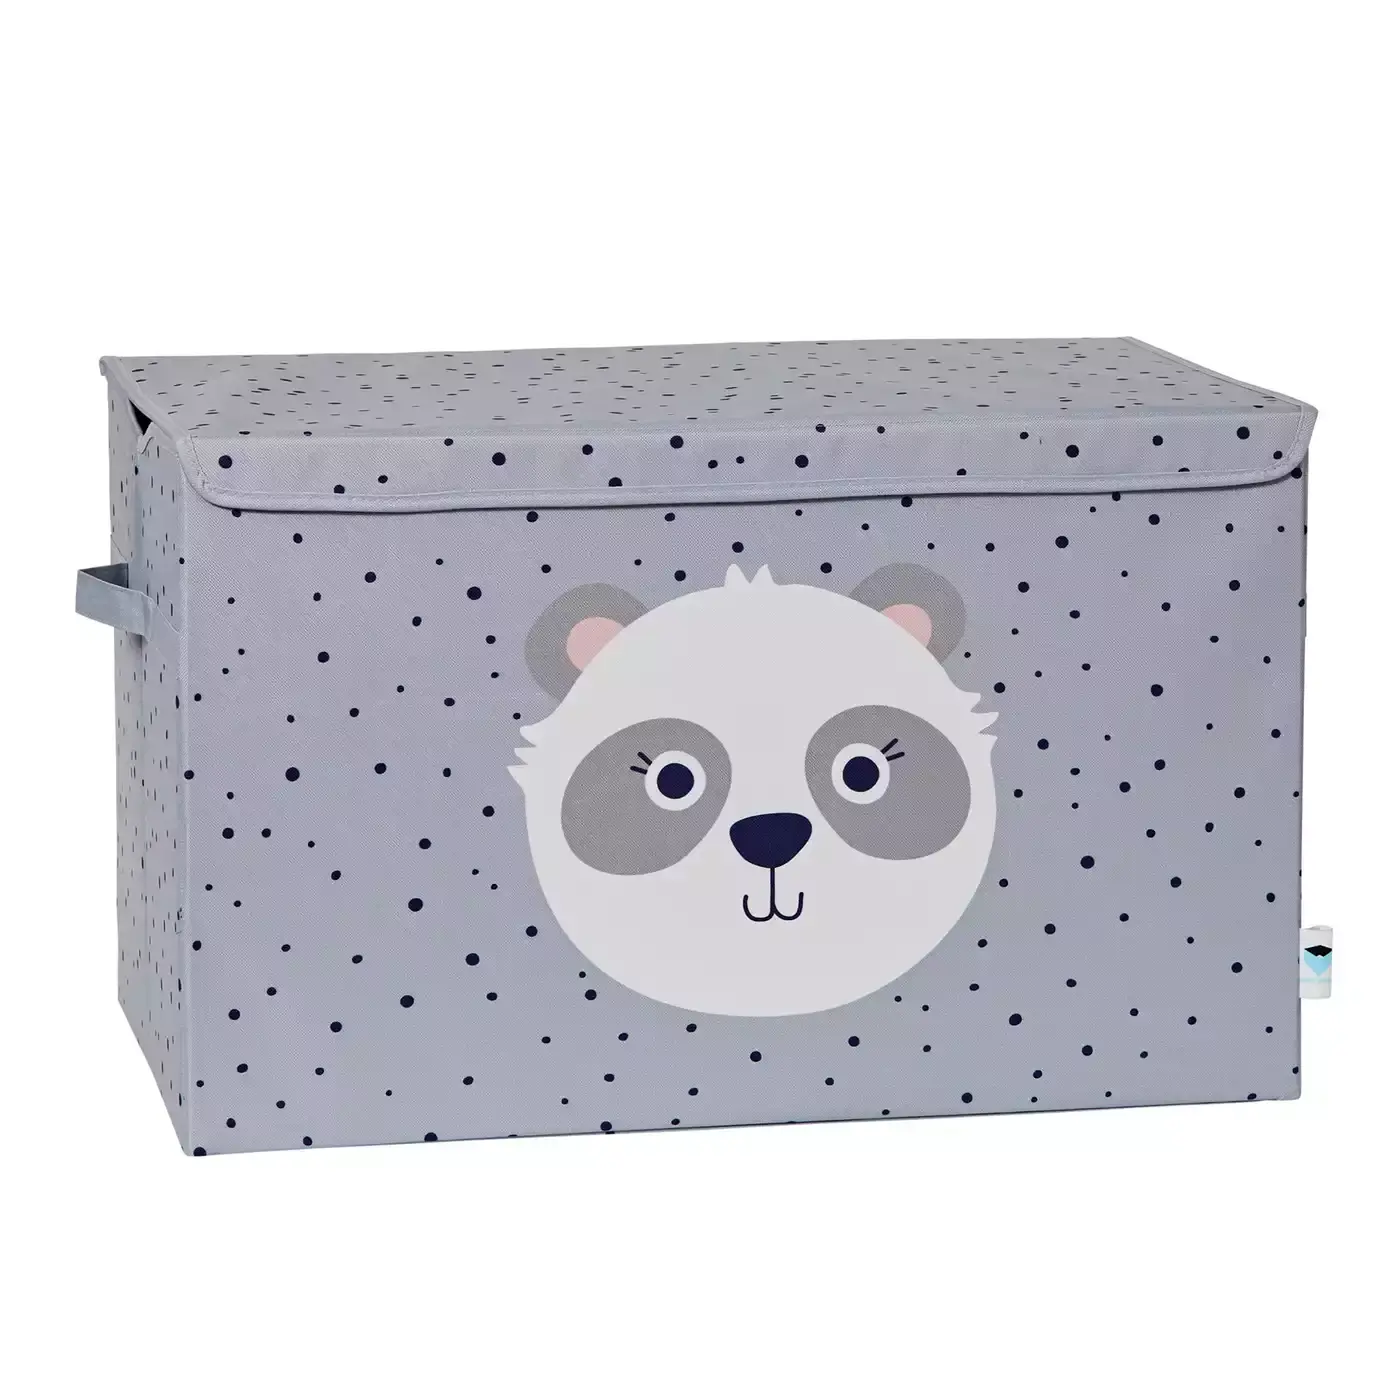 Spielzeugtruhe Panda Store.it! Grau 2000582052501 1